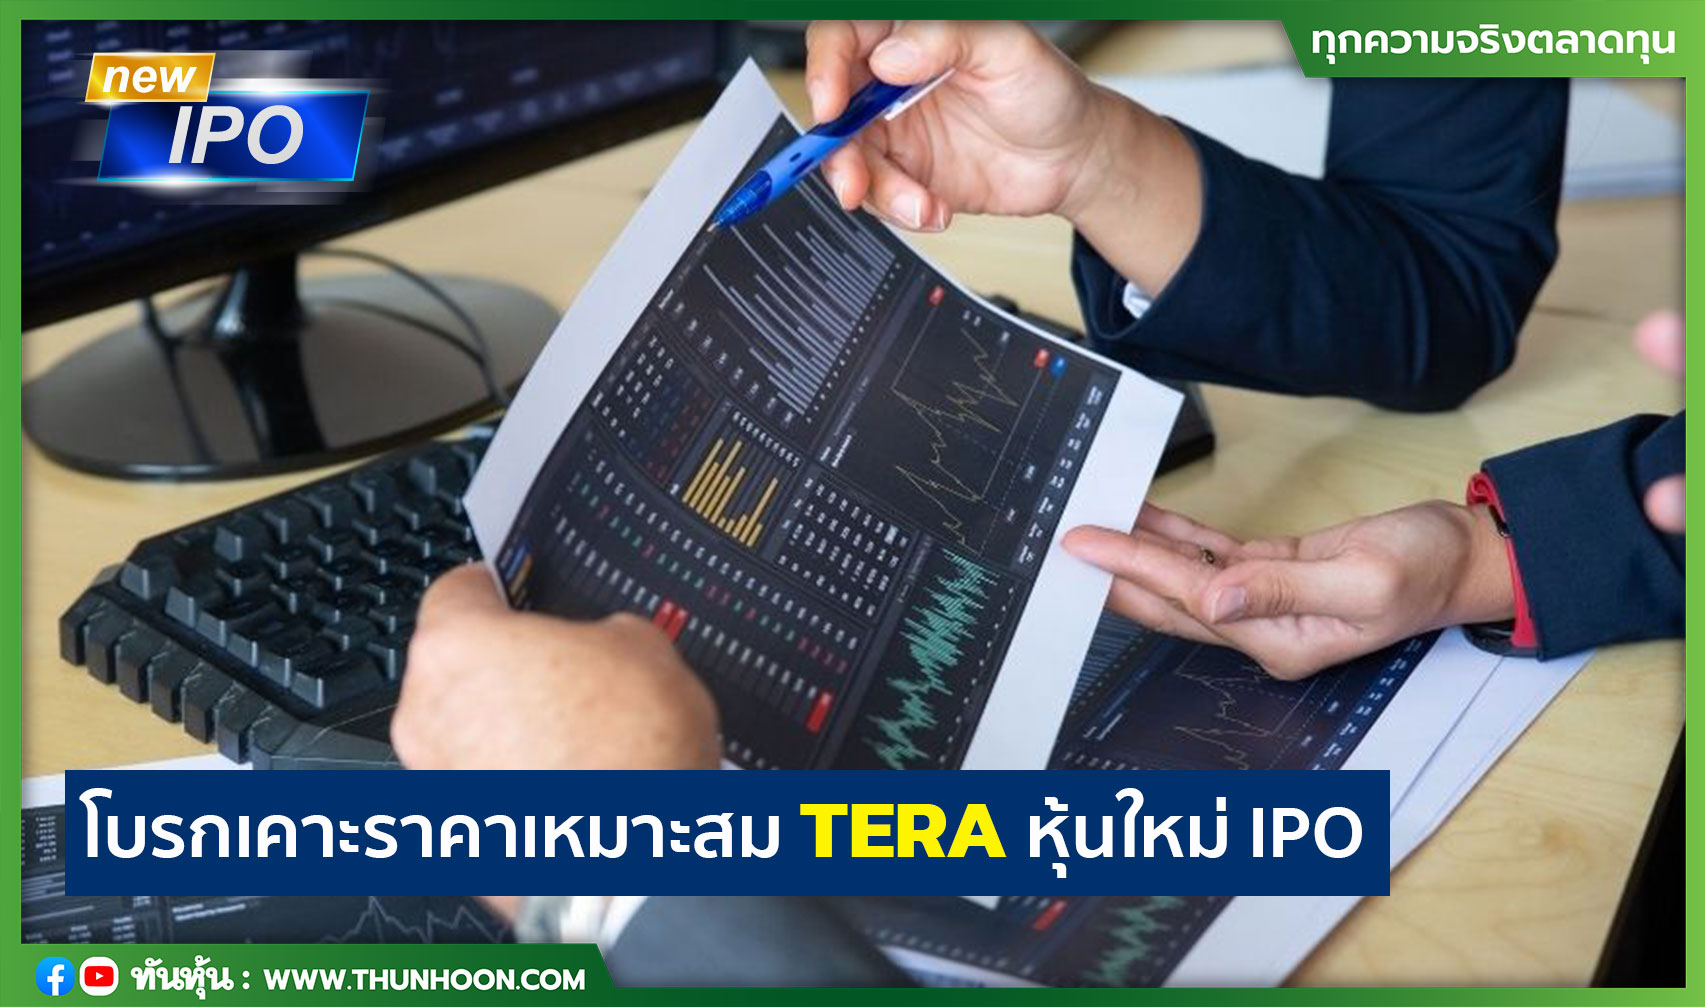 You are currently viewing โบรกเคาะราคาเหมาะสม TERA หุ้นใหม่ IPO